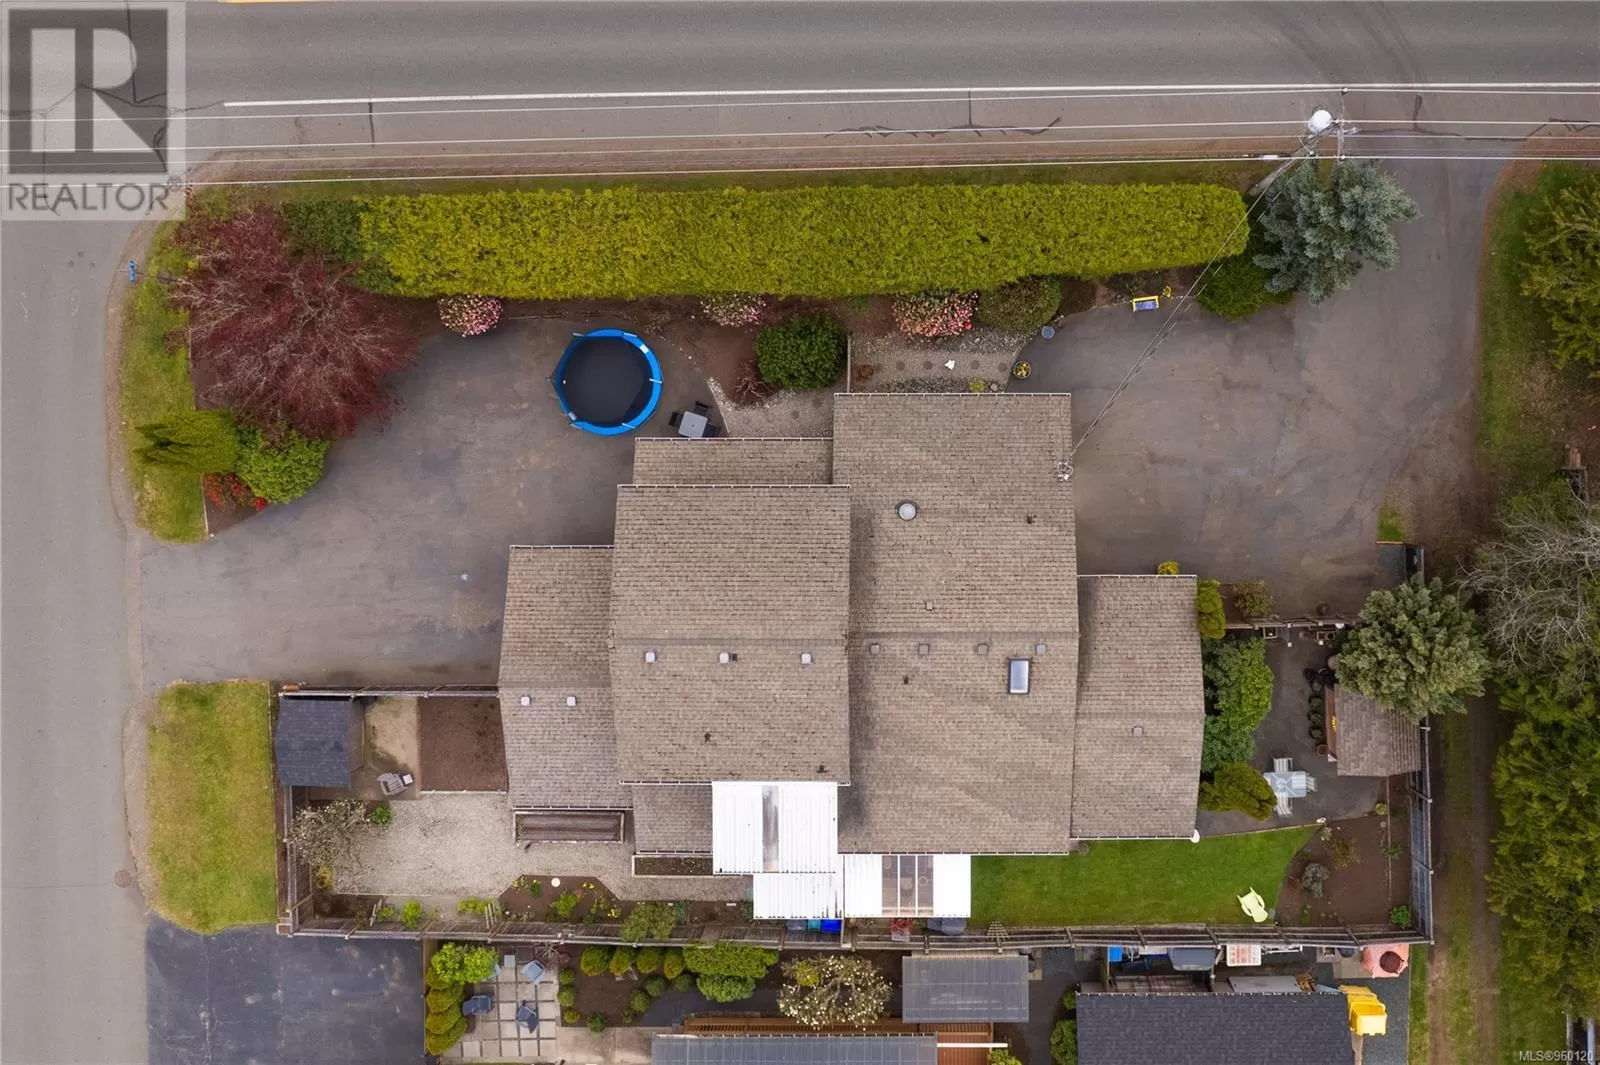 Duplex for rent: 239 Fifth Ave, Qualicum Beach, British Columbia V9K 1S2